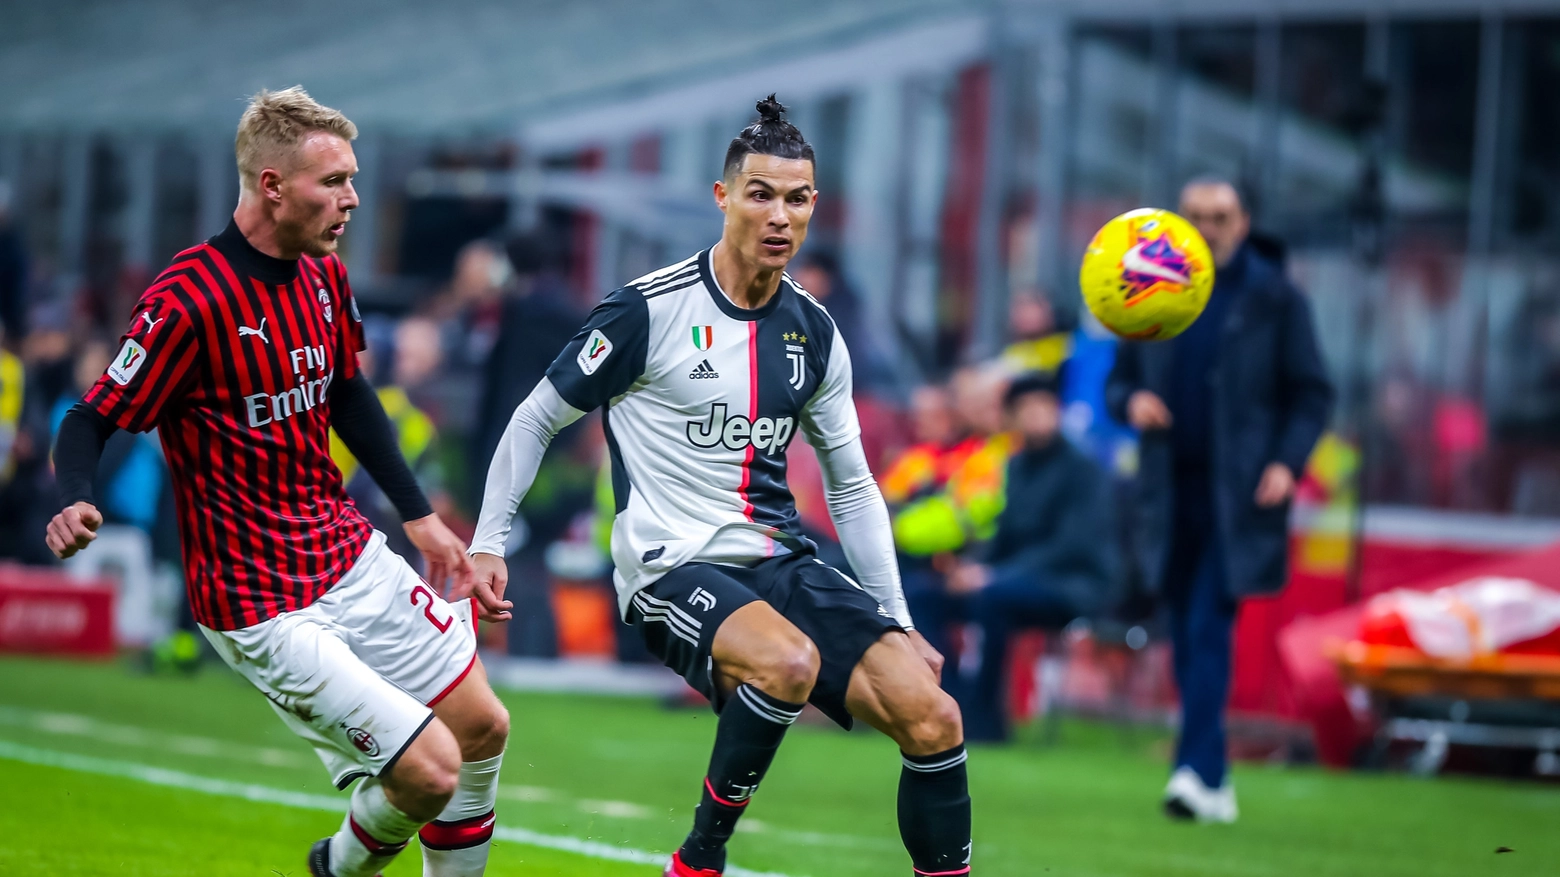 Coppa Italia, Kjaer e Ronaldo nell'andata di Milan-Juventus finita 1-1